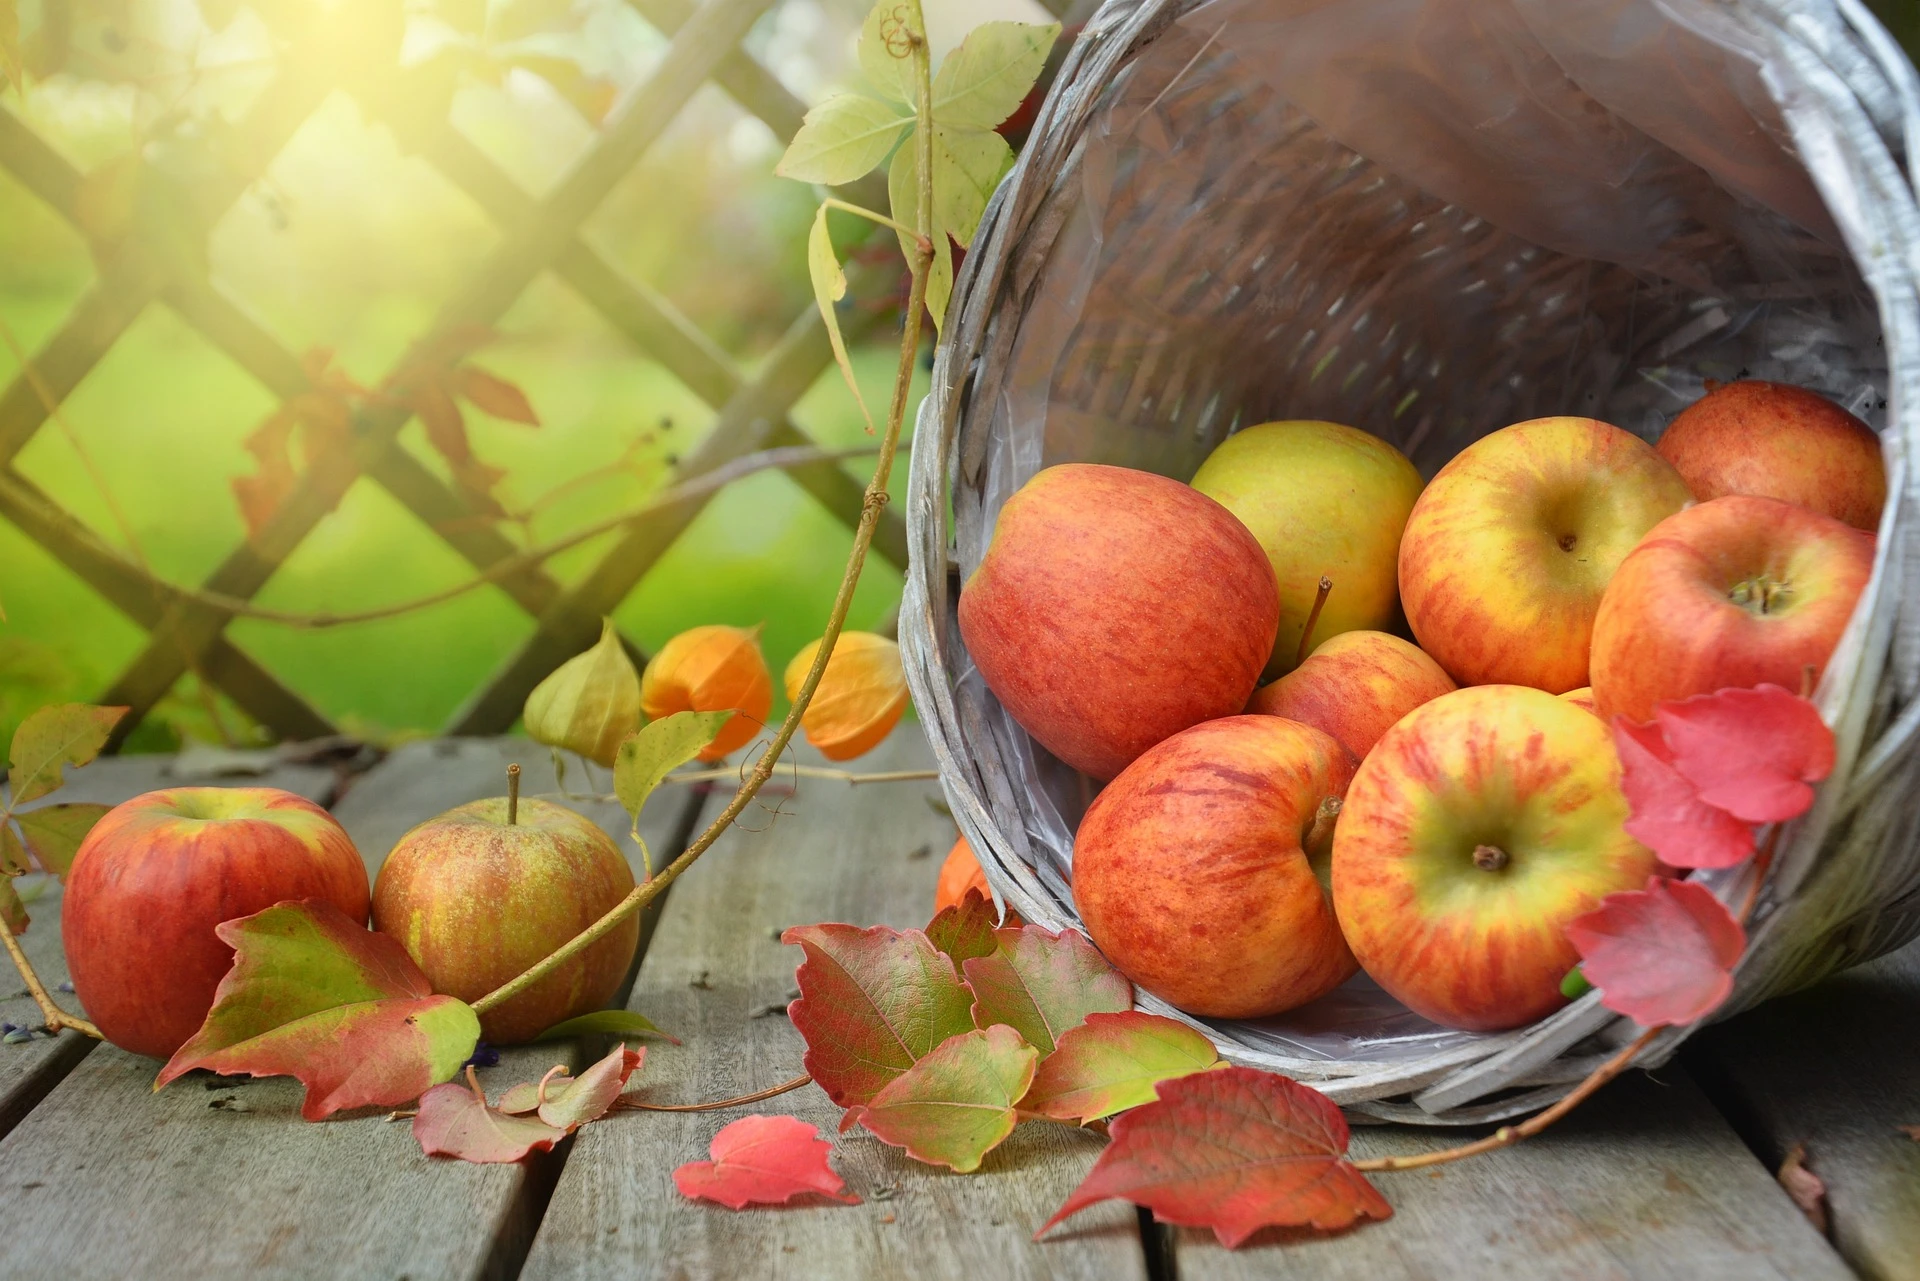 Des pommes. Photo choisie par Monsieurdefrance.com : Rebekka D de Pixabay